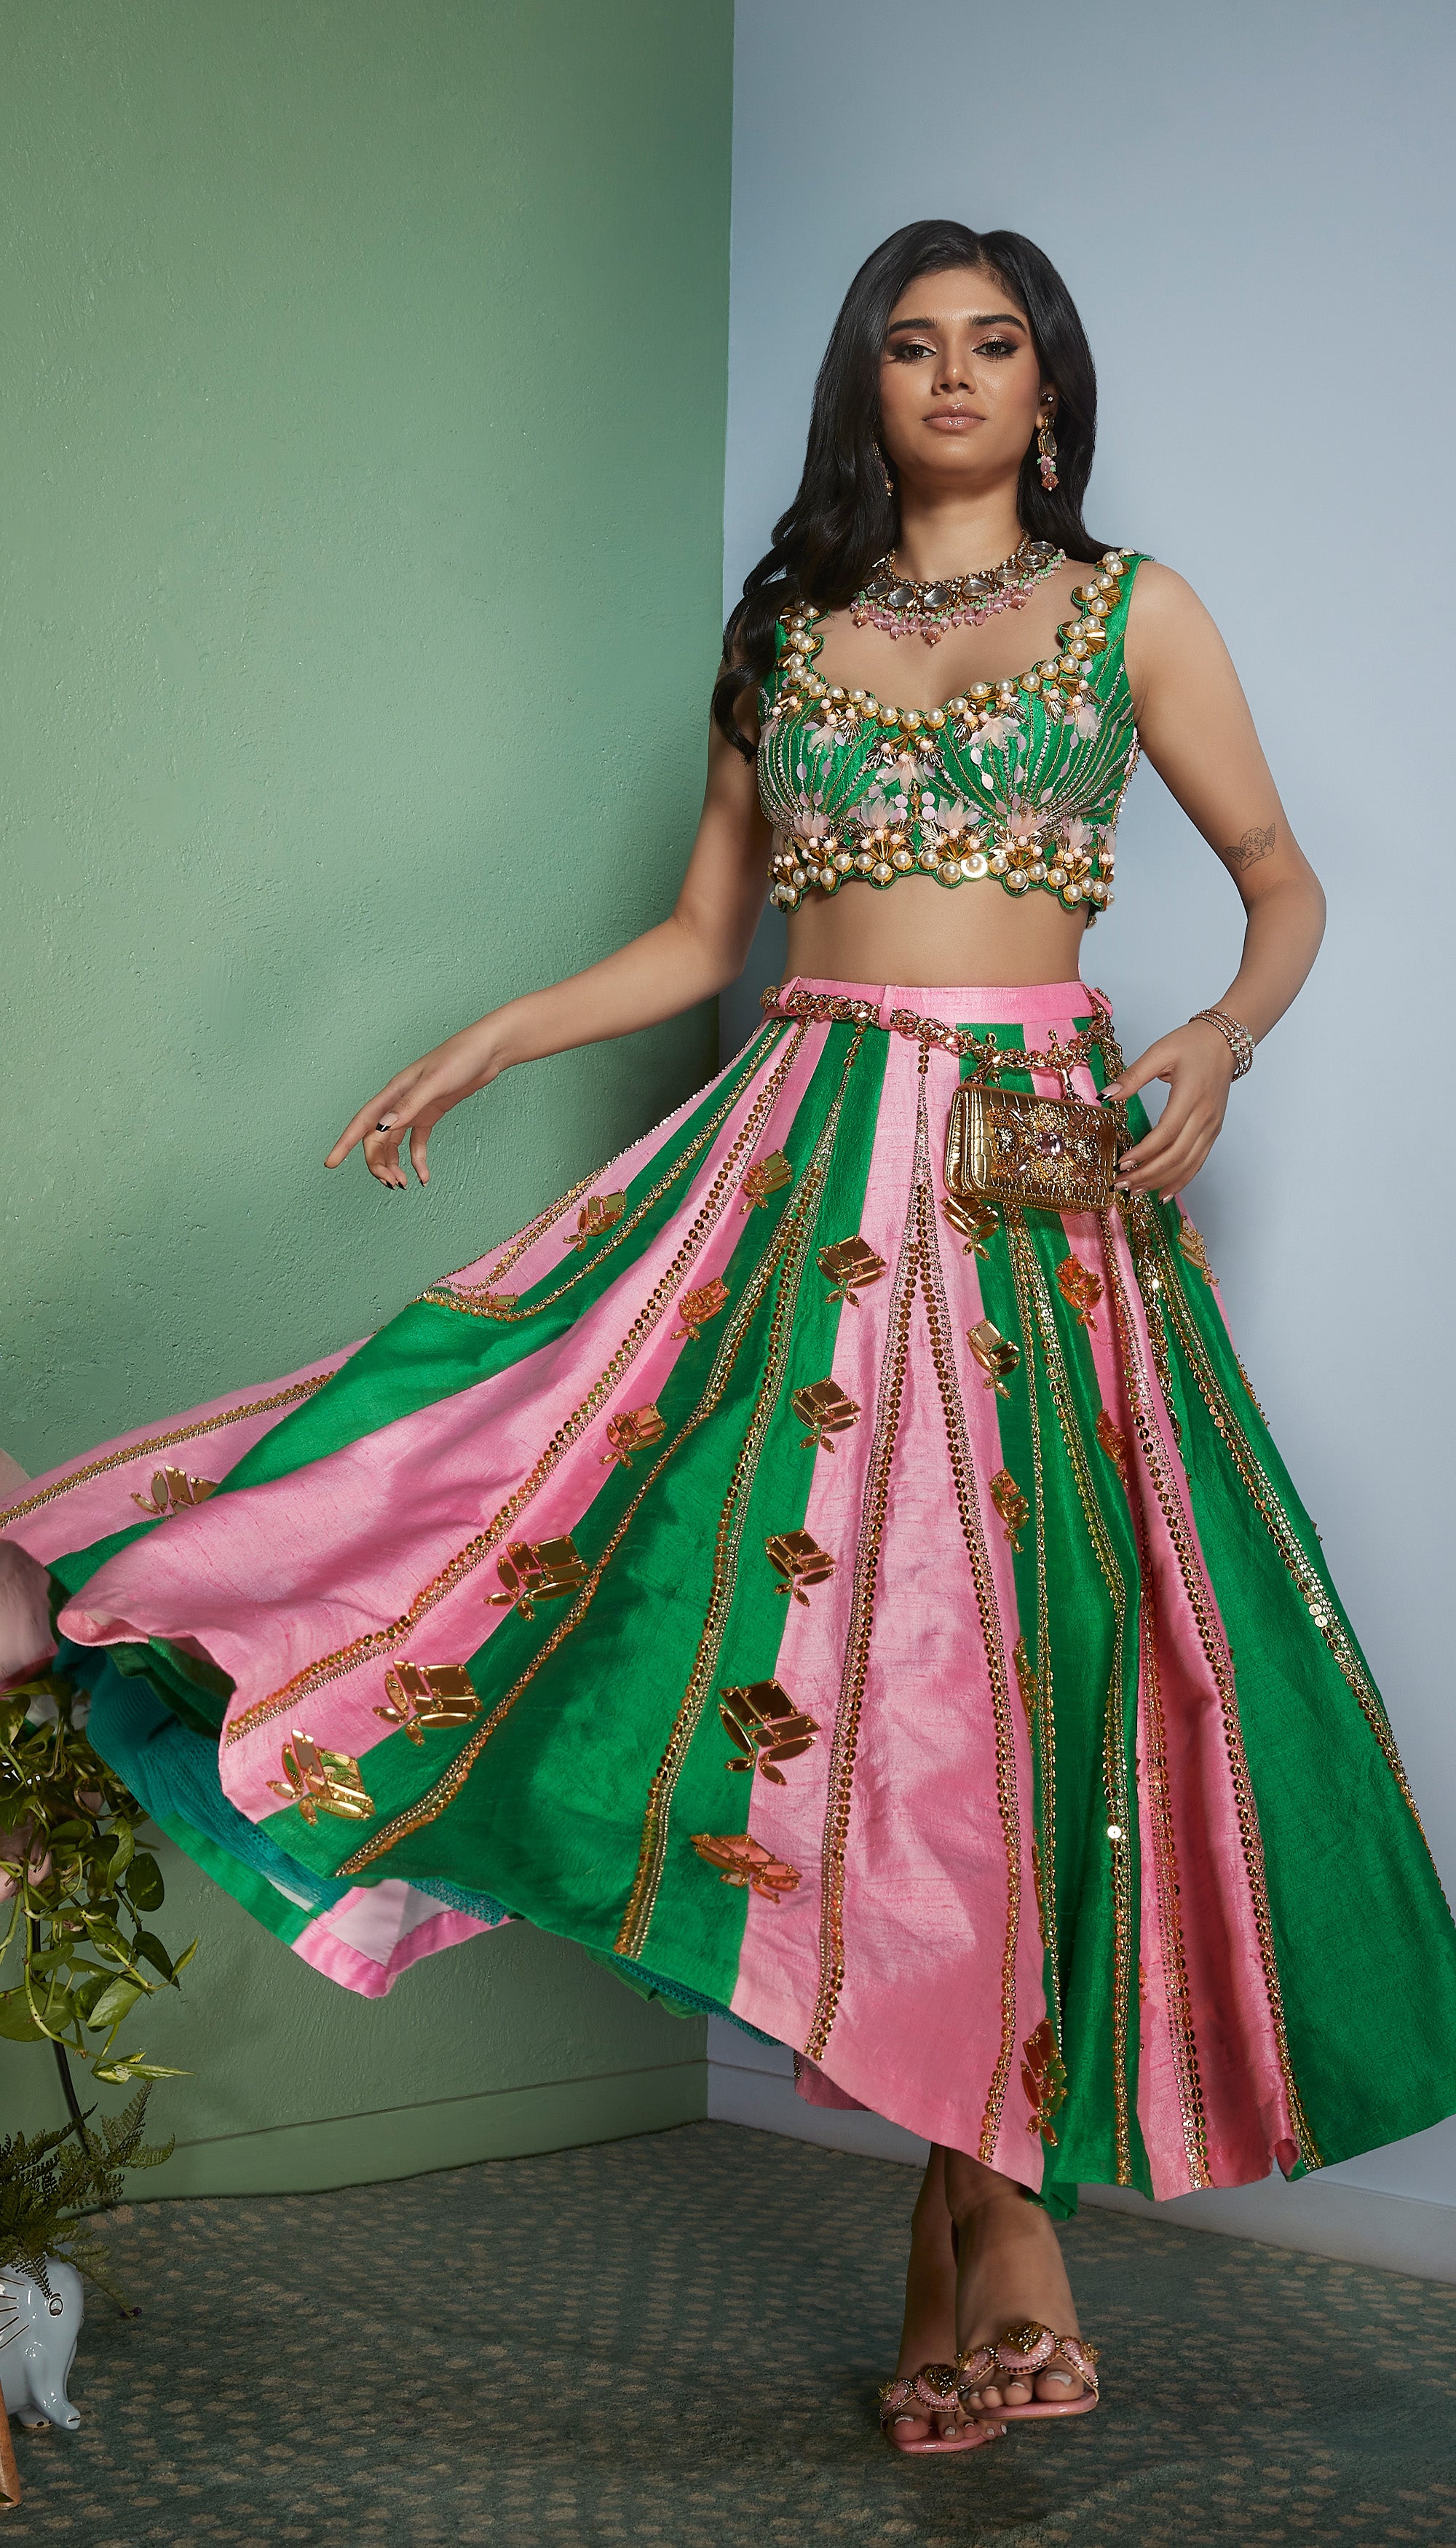 Sabyasachi DESIGNER LEHENGA CHOLI for Women Party Wear Bollywood Lengha  Sari,indian Wedding Wear Custom Stitched Lehenga With Dupatta Skirt - Etsy